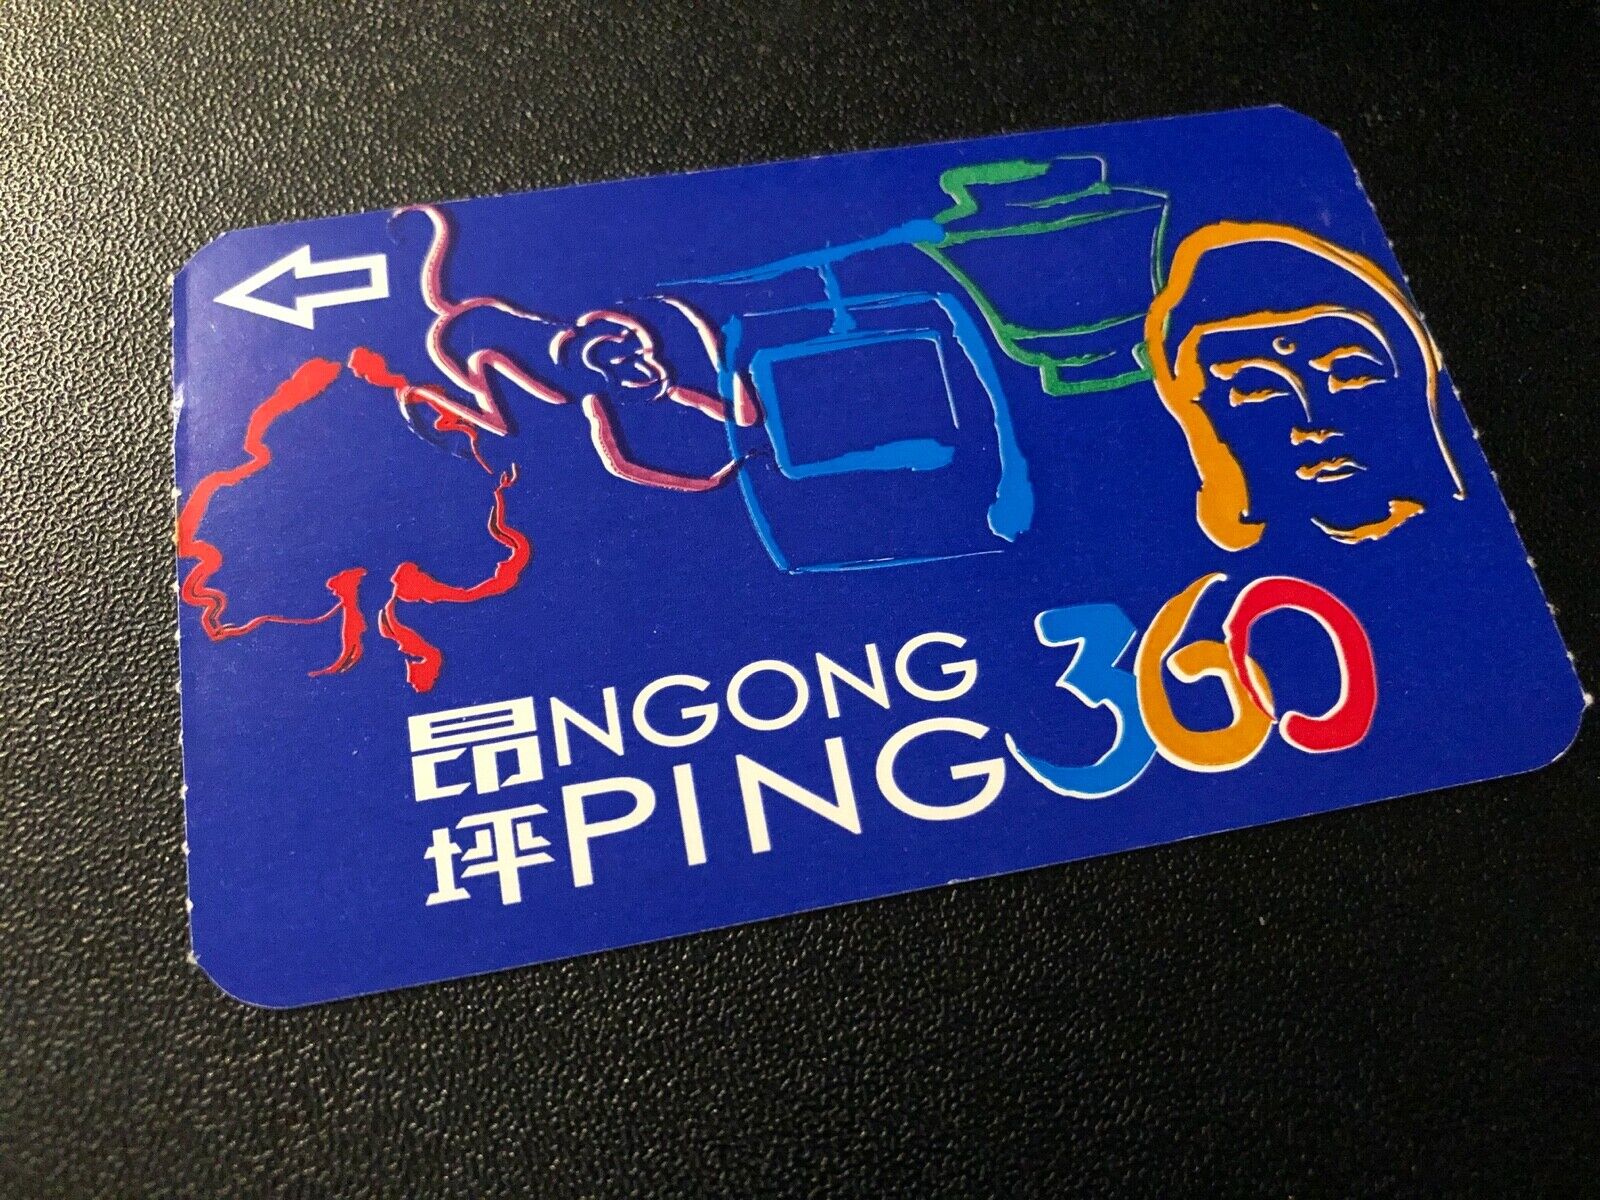 Hong Kong Ngong Ping 360 Gondola Lift Adult Ticket Stub from 2009 Collectible